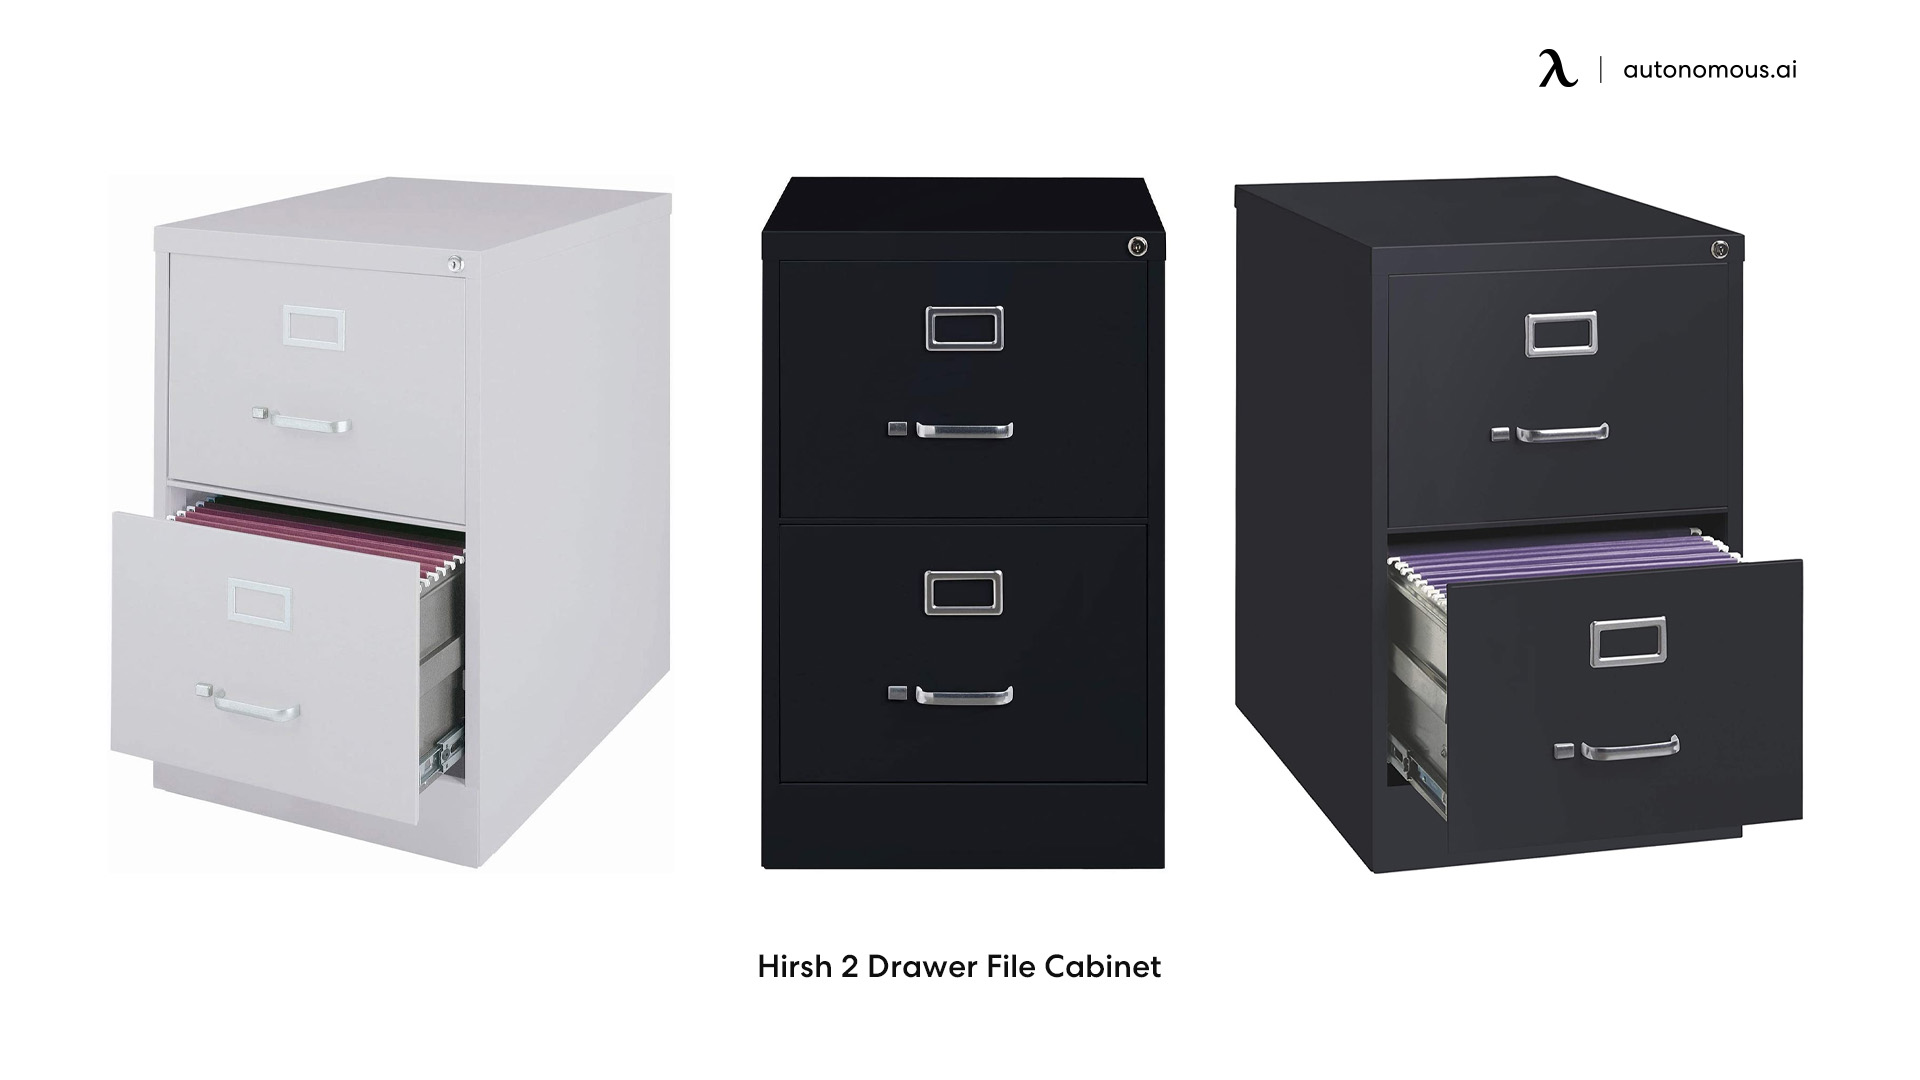 Hirsh 2 Drawer File Cabinet